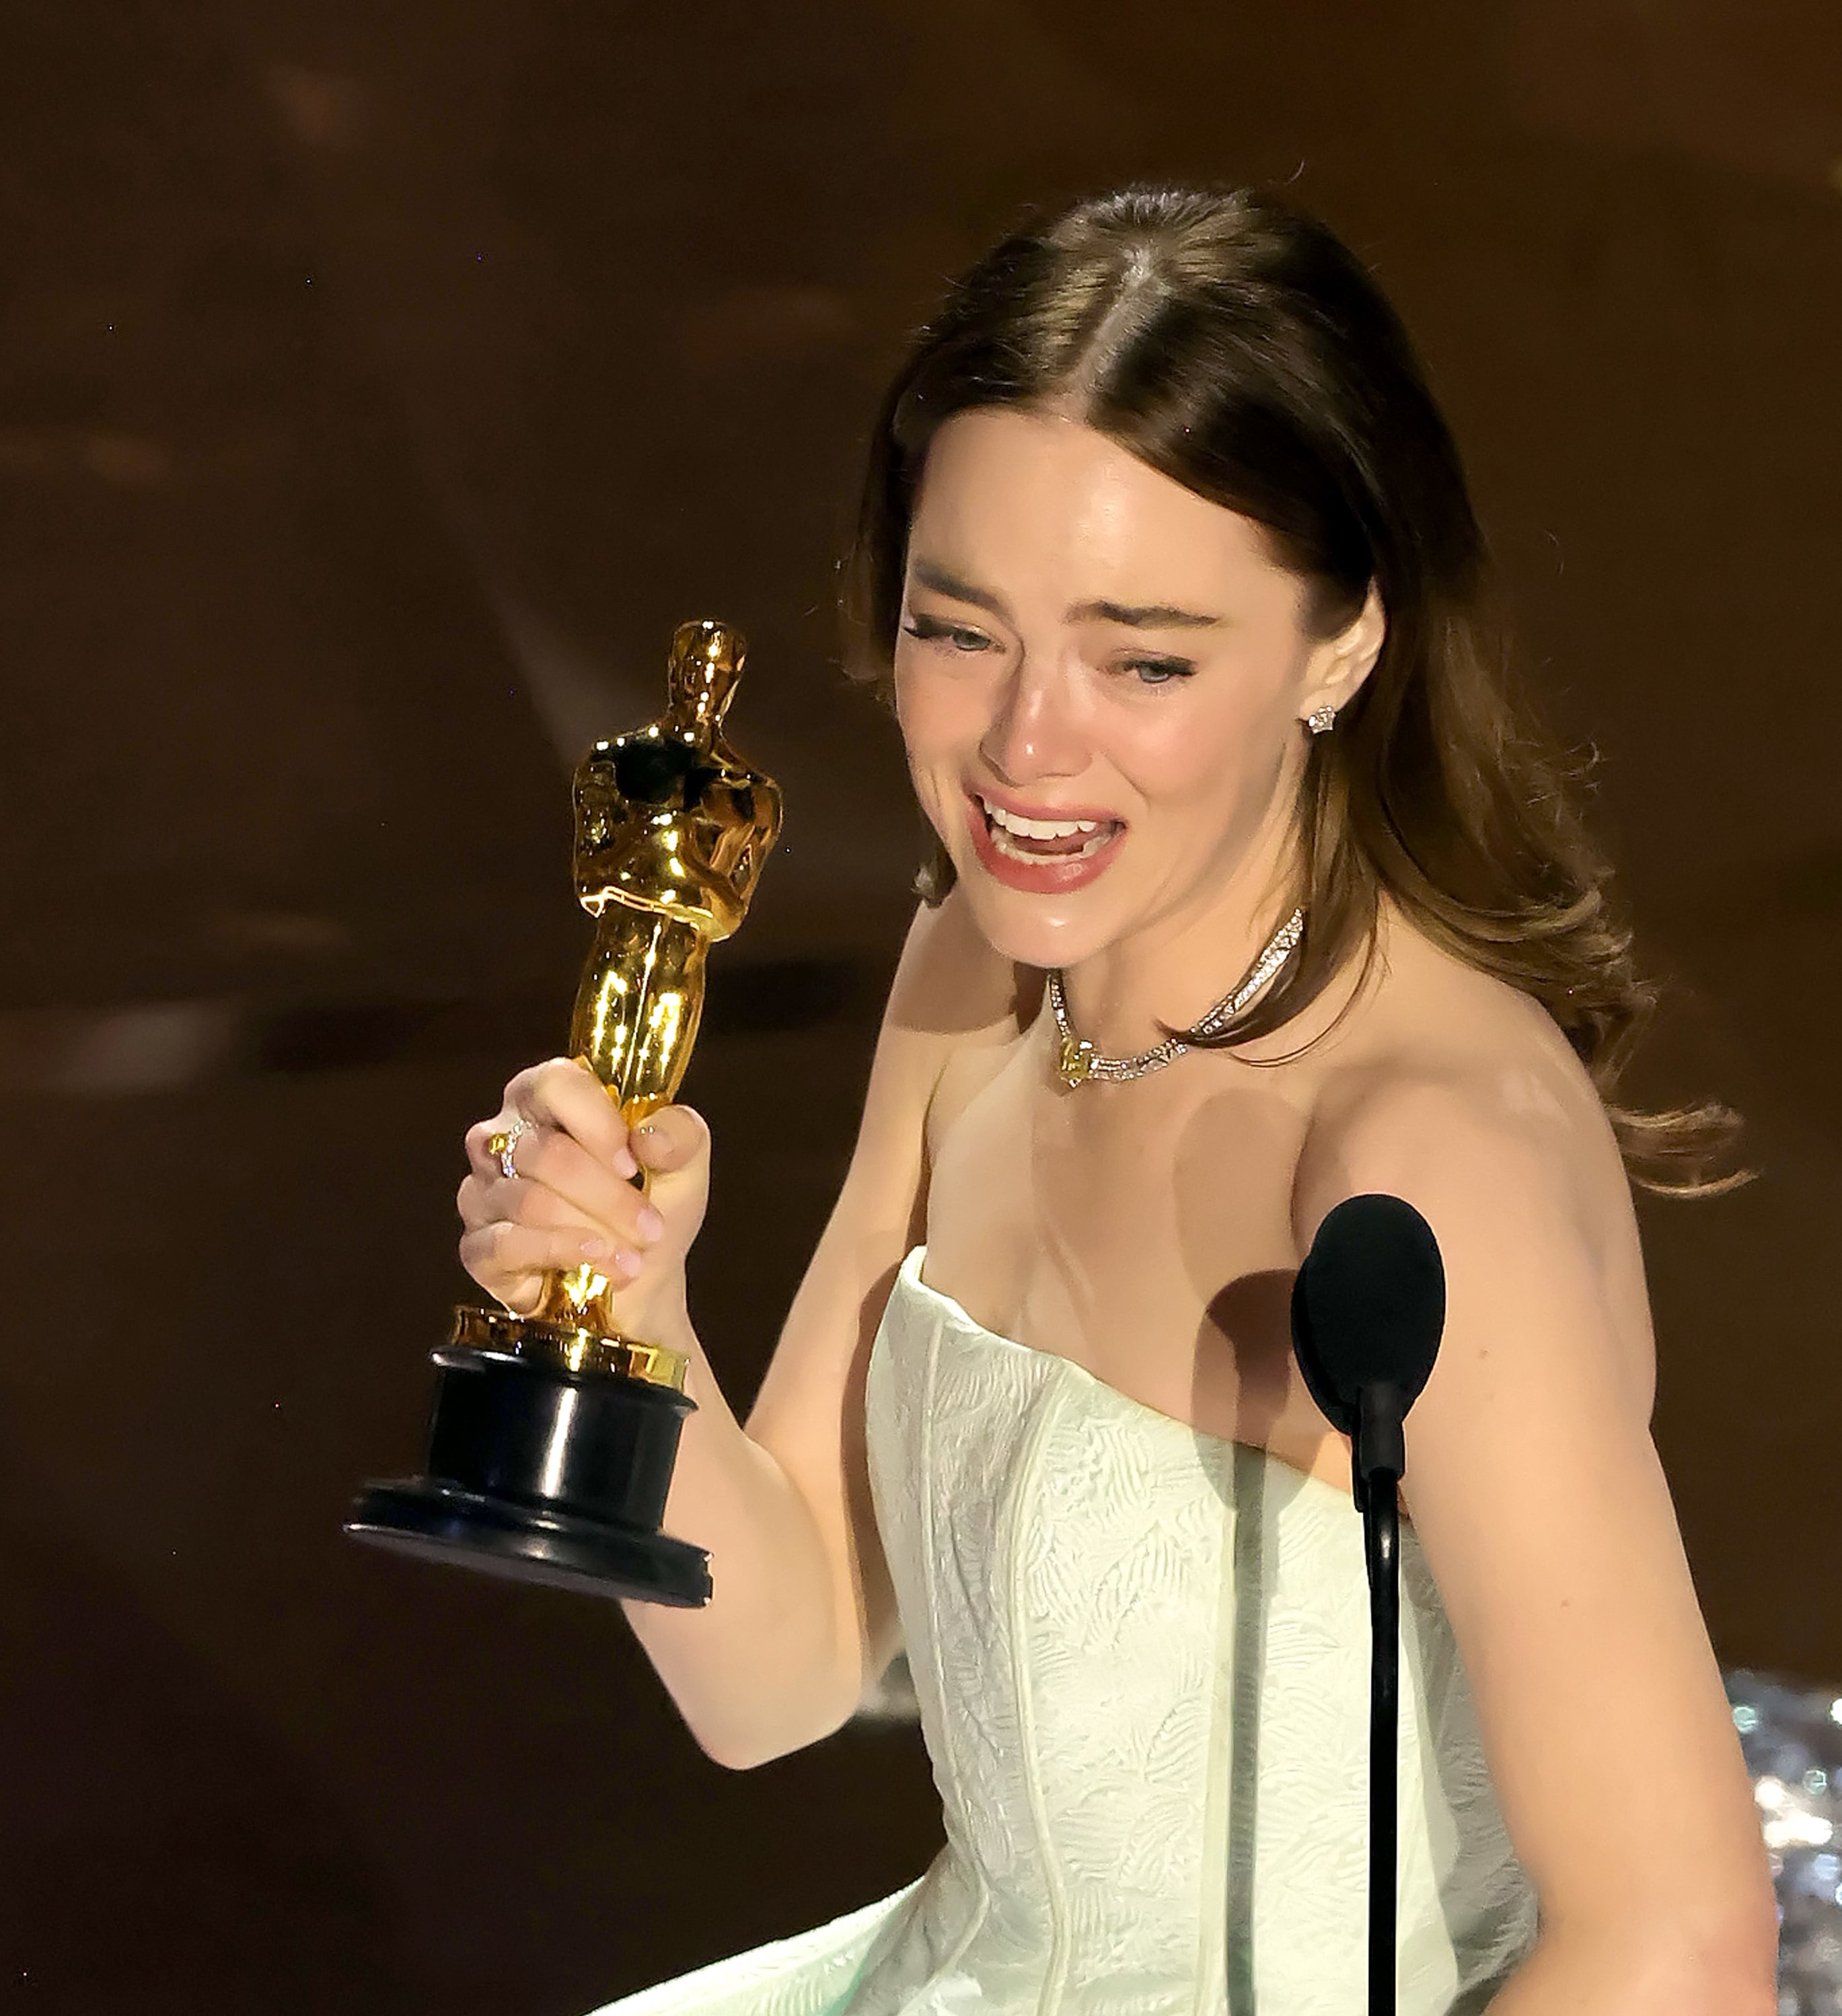 Emma in an evening dress holding an Oscar trophy, expressing joy